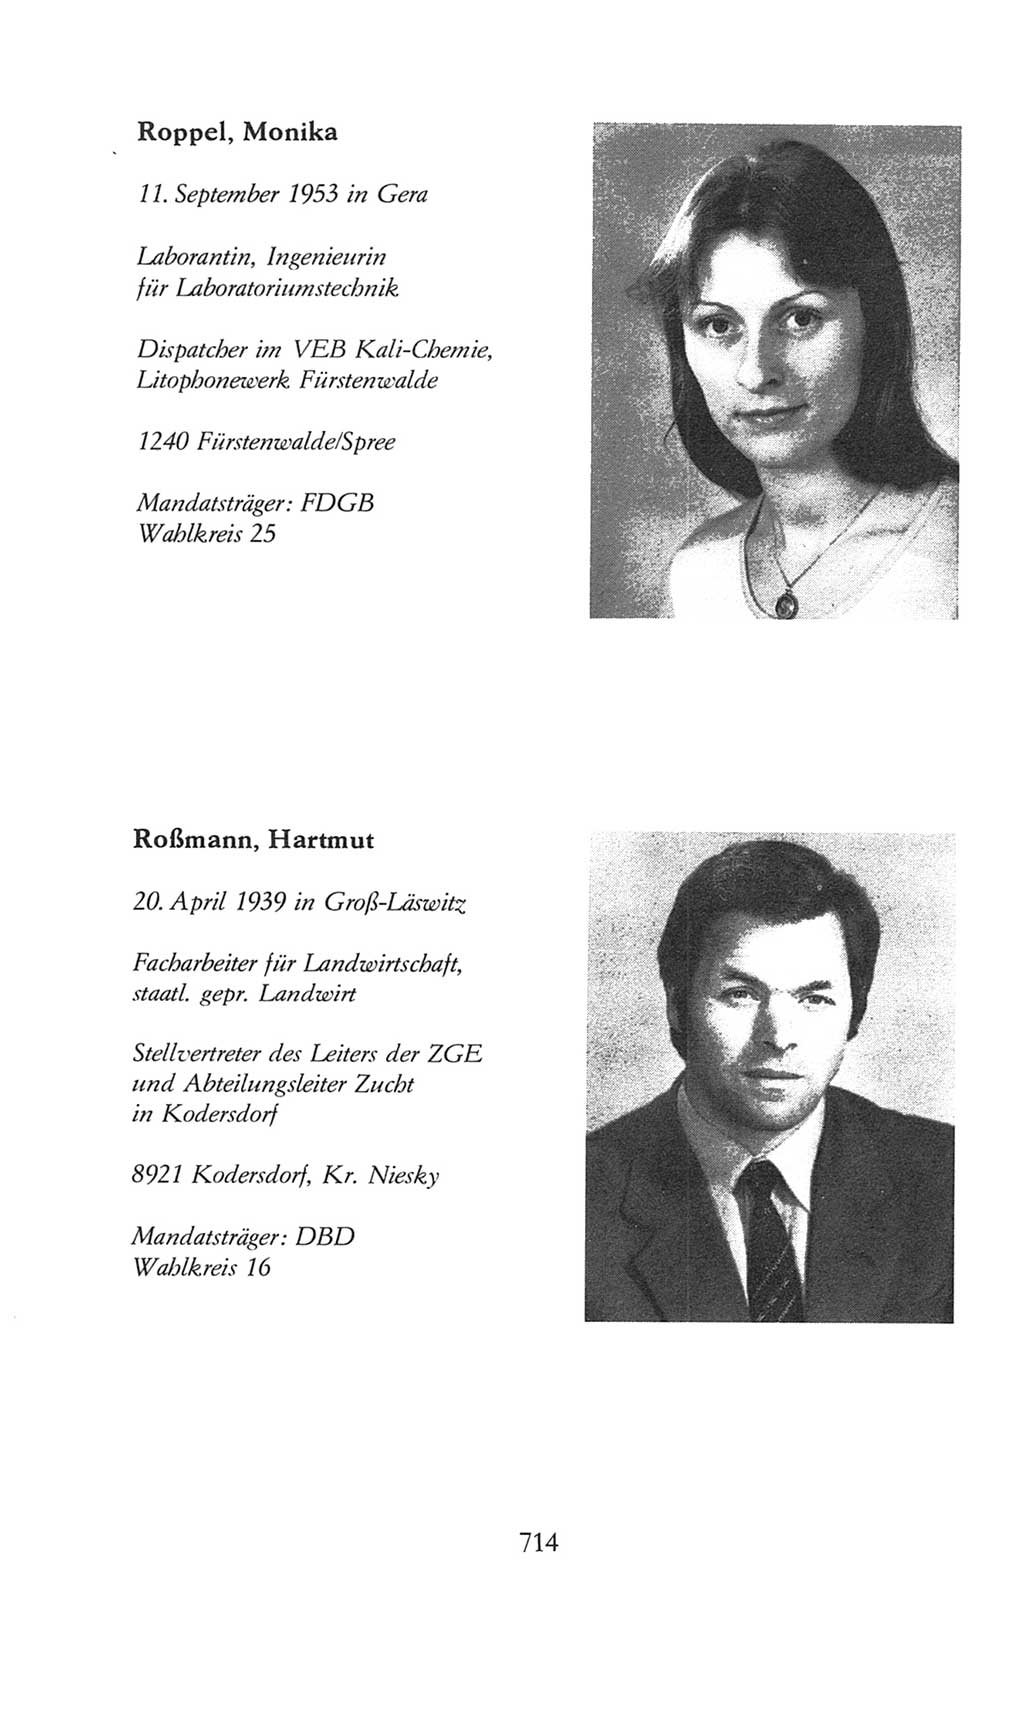 Volkskammer (VK) der Deutschen Demokratischen Republik (DDR), 8. Wahlperiode 1981-1986, Seite 714 (VK. DDR 8. WP. 1981-1986, S. 714)